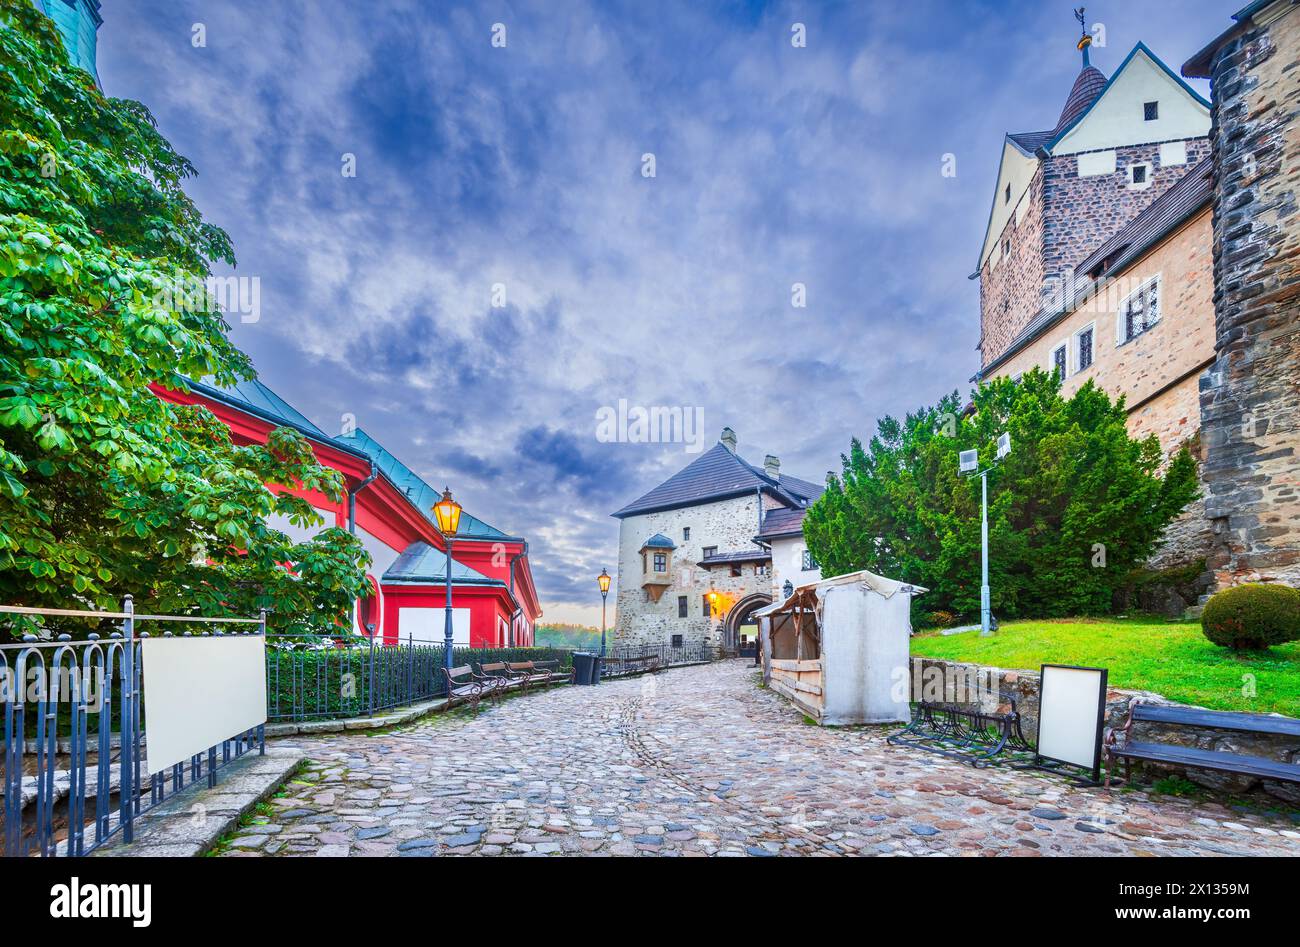 Loket, République tchèque. Charmant paysage urbain nuageux avec centre-ville médiéval, voyage en Bohême. Banque D'Images